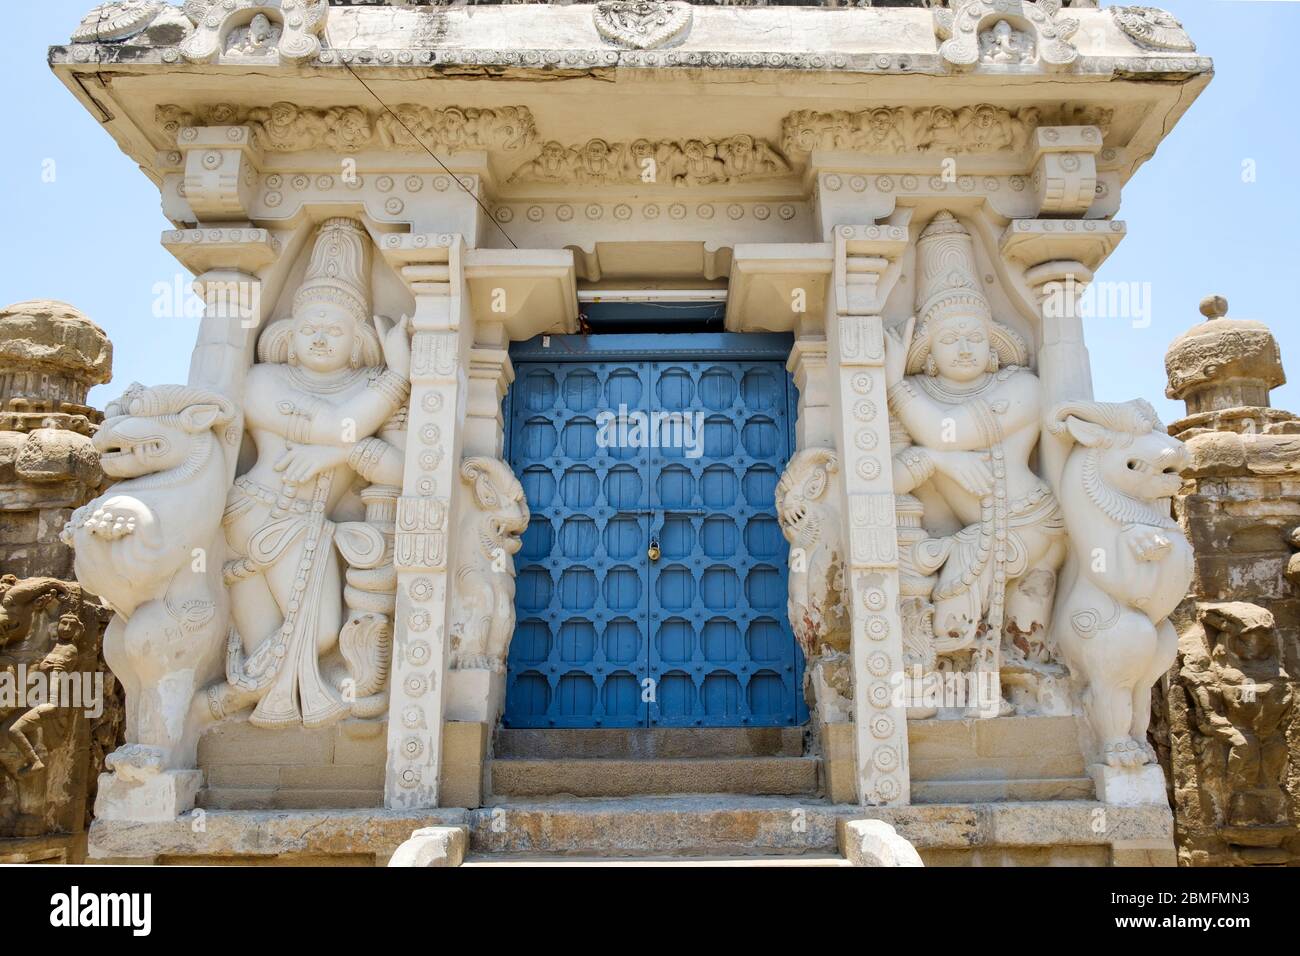 Entrée de la mandapa flanquée de 'dvarapala' (gardiens) et 'yali' (créatures ressemblant à un lion) devant le temple Kailasanathar, Kanchipuram, Tamil Nadu, Inde. Banque D'Images